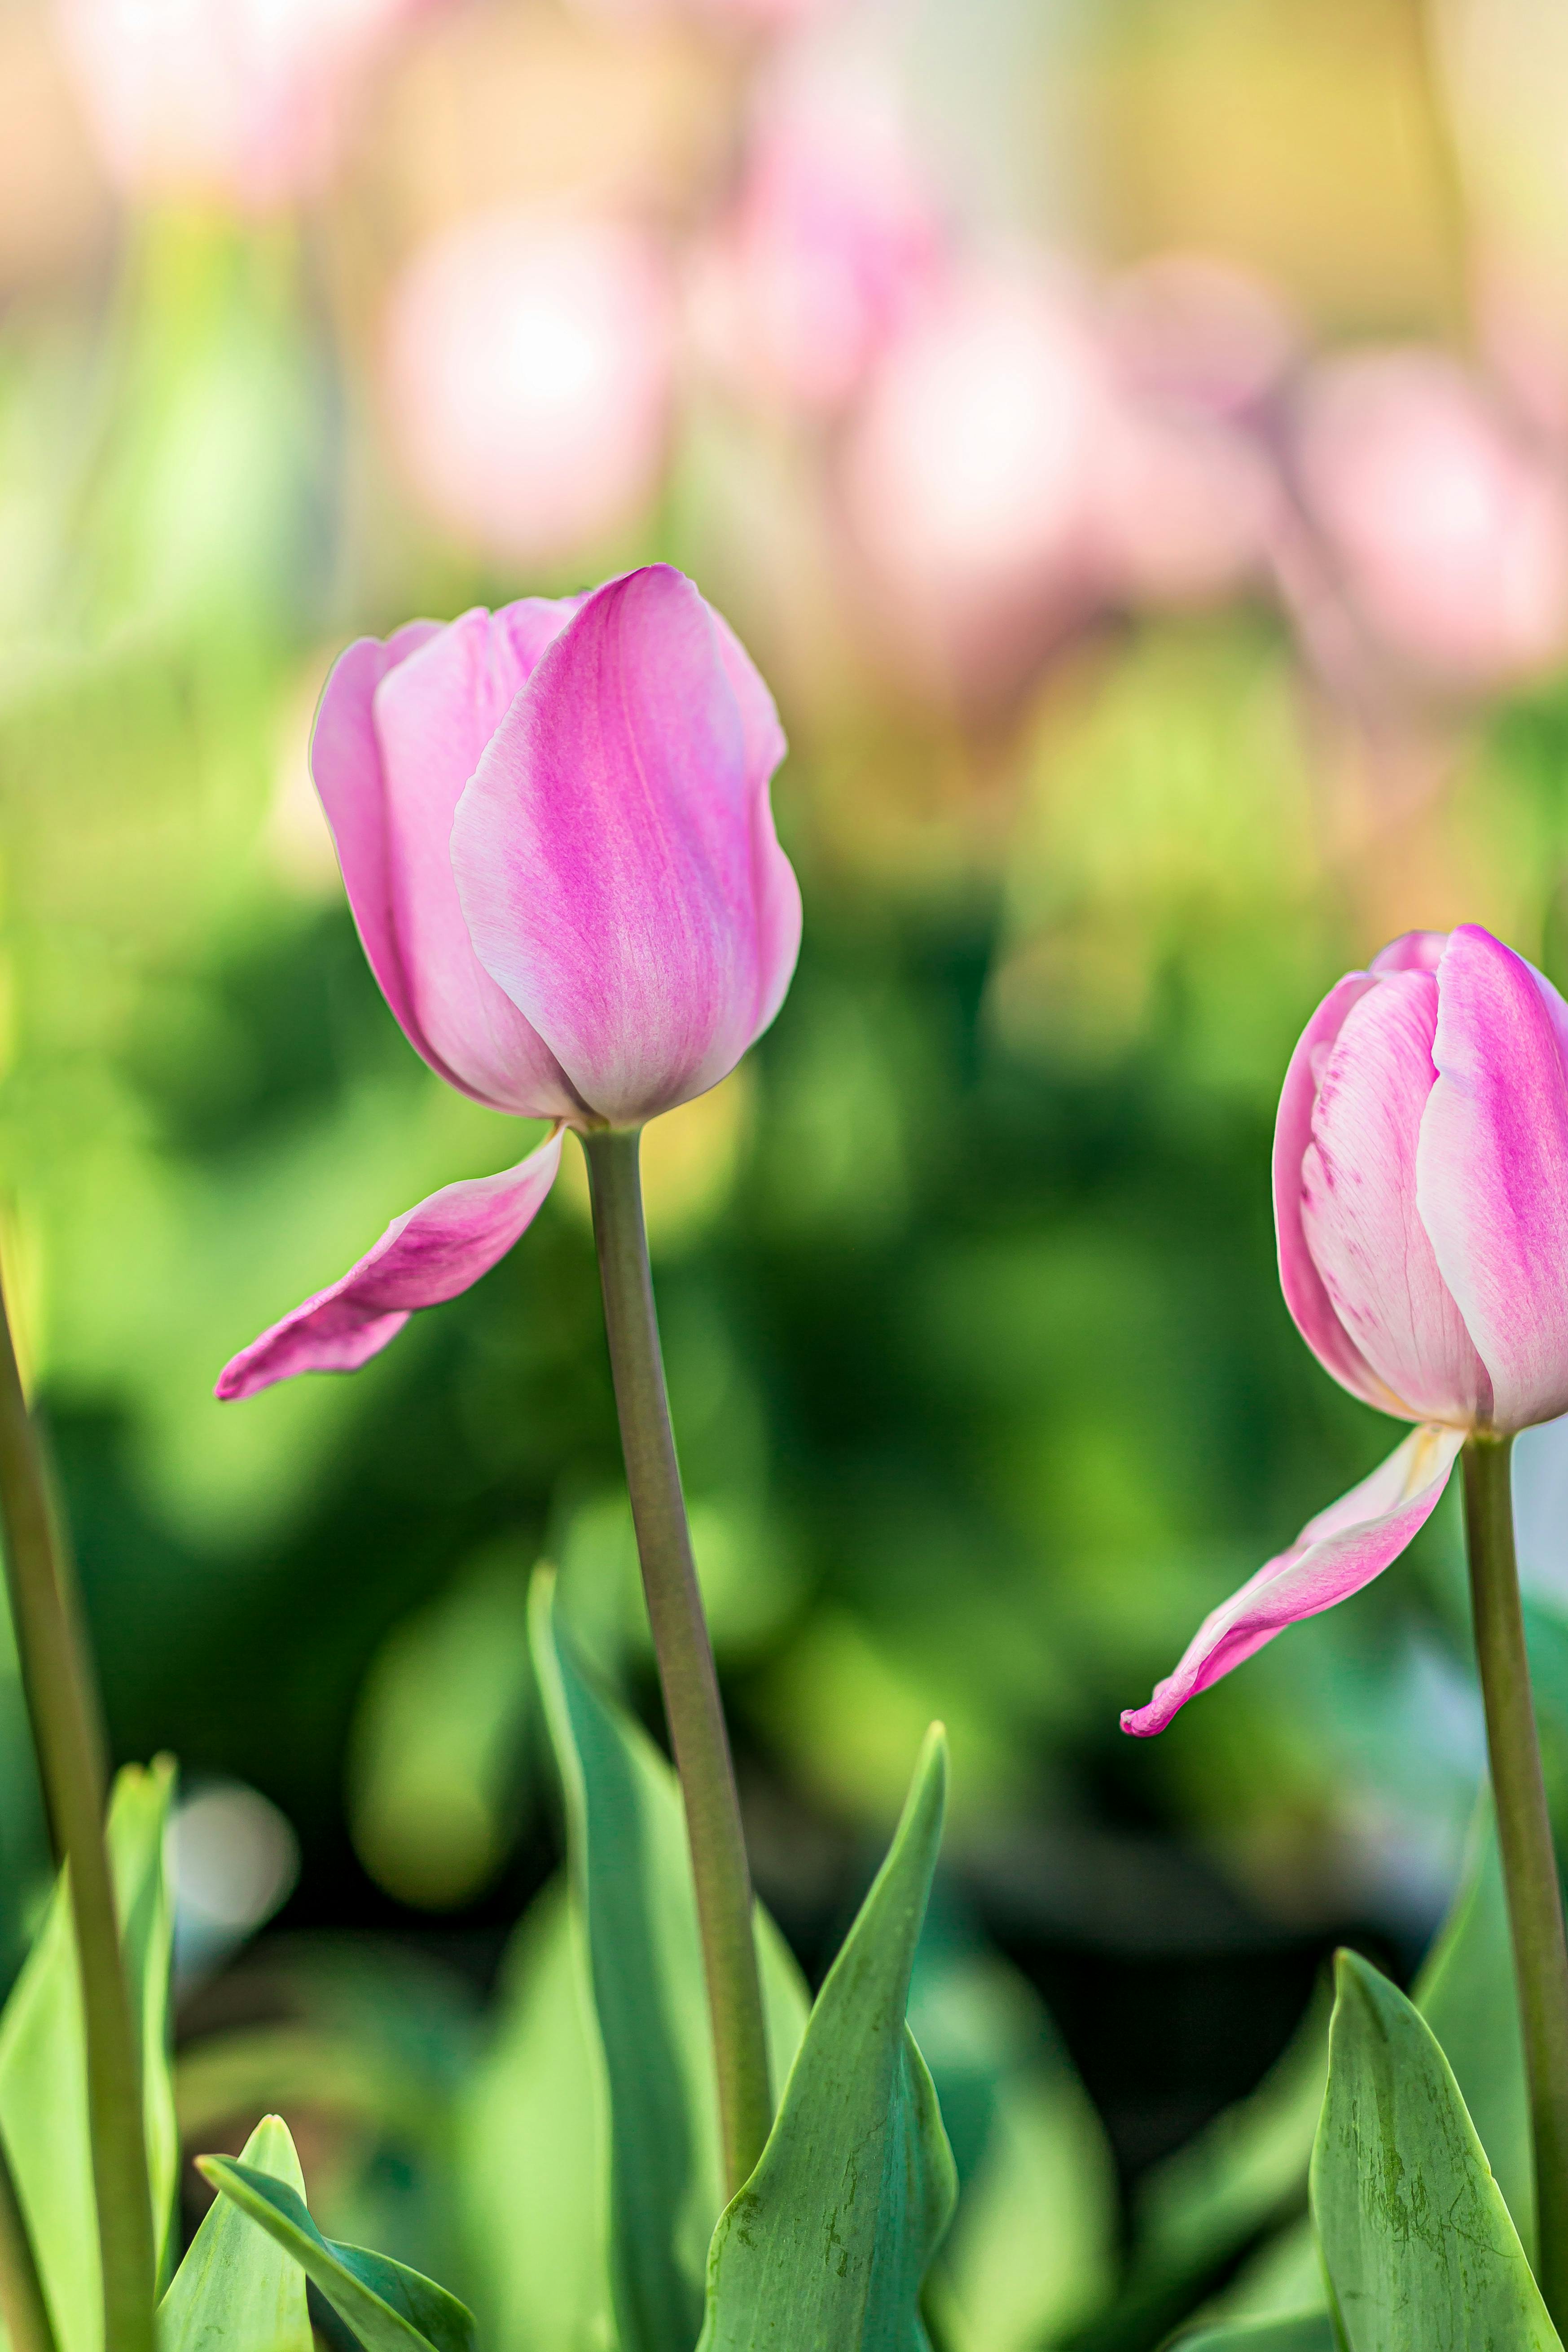 Hoa tulip màu hồng là biểu tượng của tình yêu và sự trân trọng. Một bông hoa tulip màu hồng được tặng là một sự chúc phúc cho người nhận. Cùng ngắm bức ảnh này và cảm nhận nét đẹp quý phái và tinh tế của hoa tulip màu hồng.